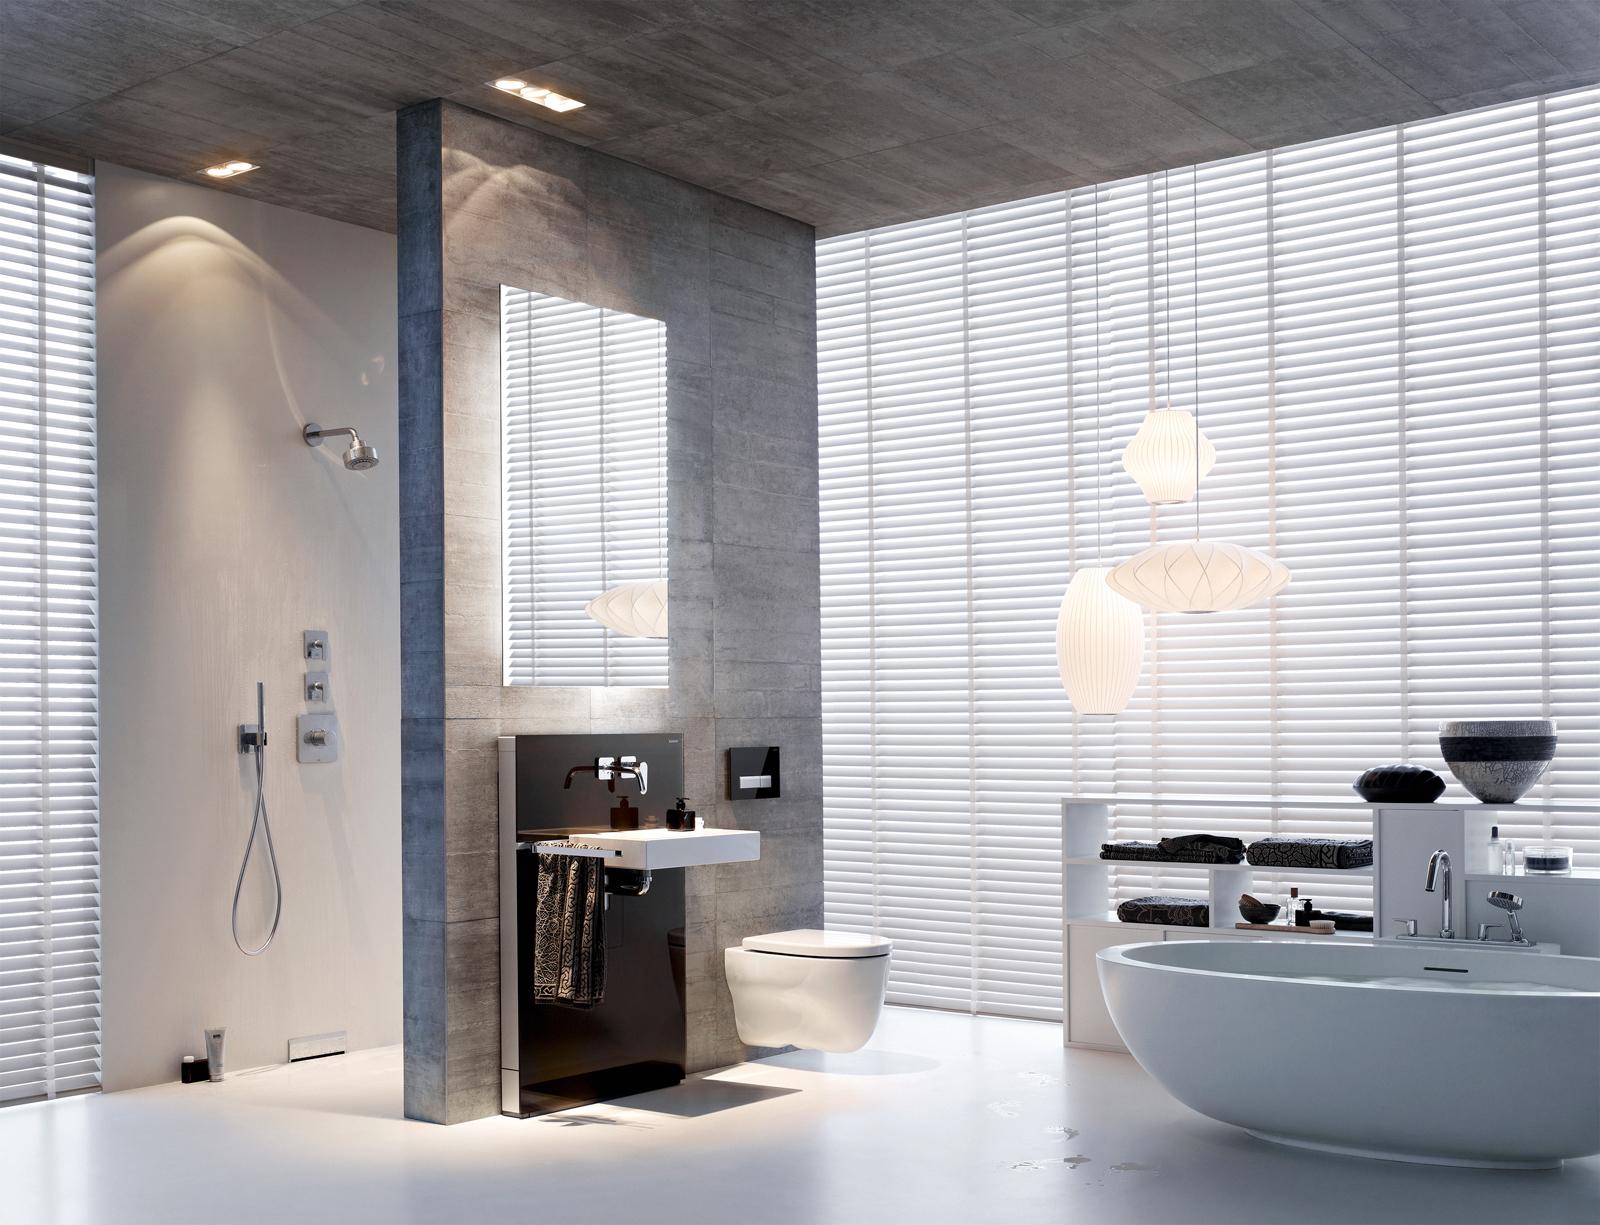 Modernes Badezimmer #badewanne #badezimmer #modernesbadezimmer #badezimmergestalten #badbeleuchtung ©Geberit